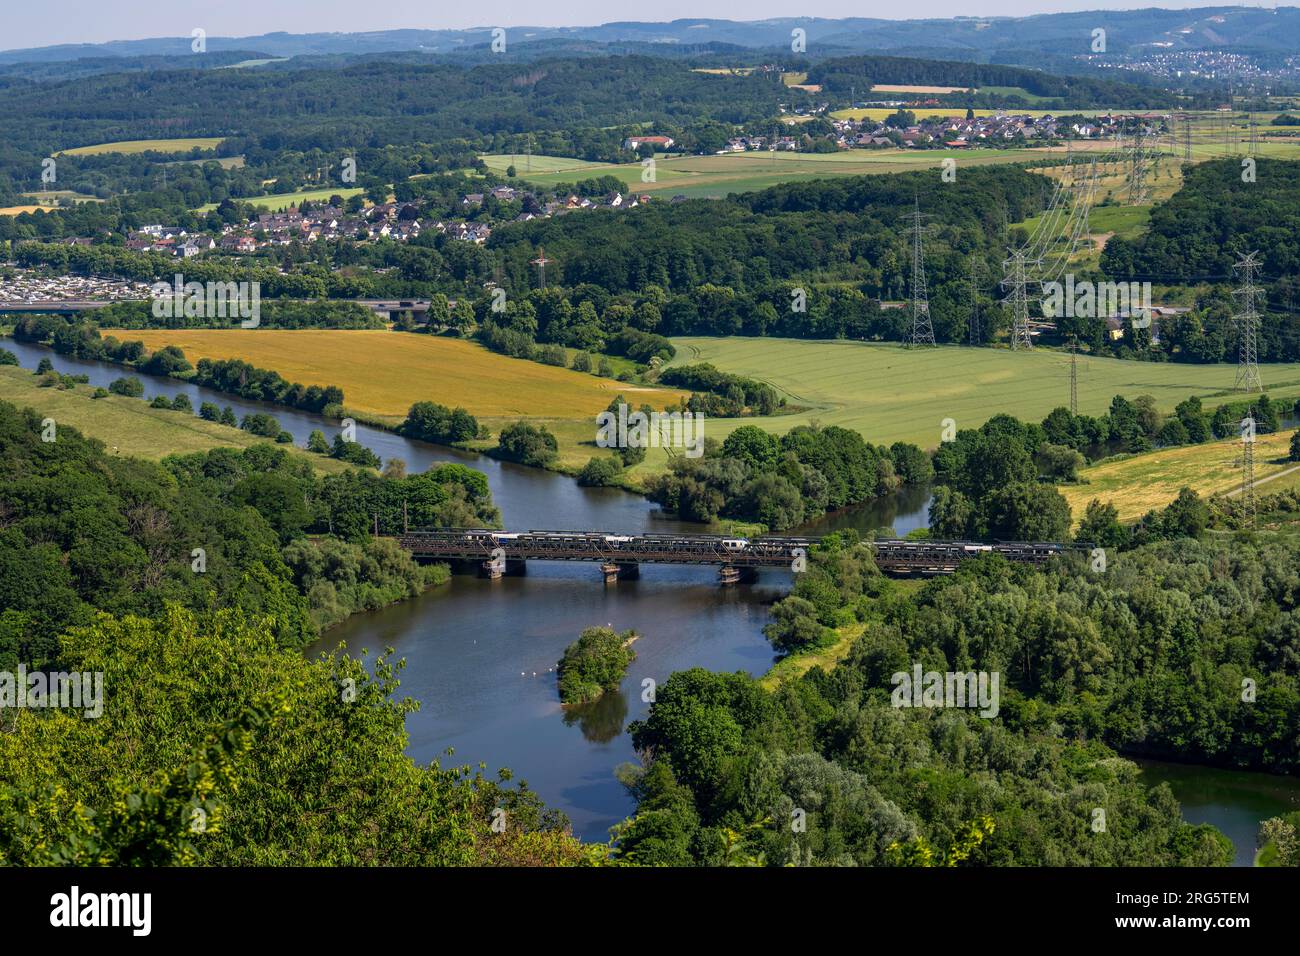 Die Ruhr bei Hagen, Eisenbahnbrücke, Mündung des Fluss Lippe in die Ruhr, grüne Ruhrlandschaft, hinten die Brücke der Autobahn A1 über die Ruhr, NRW, Stock Photo